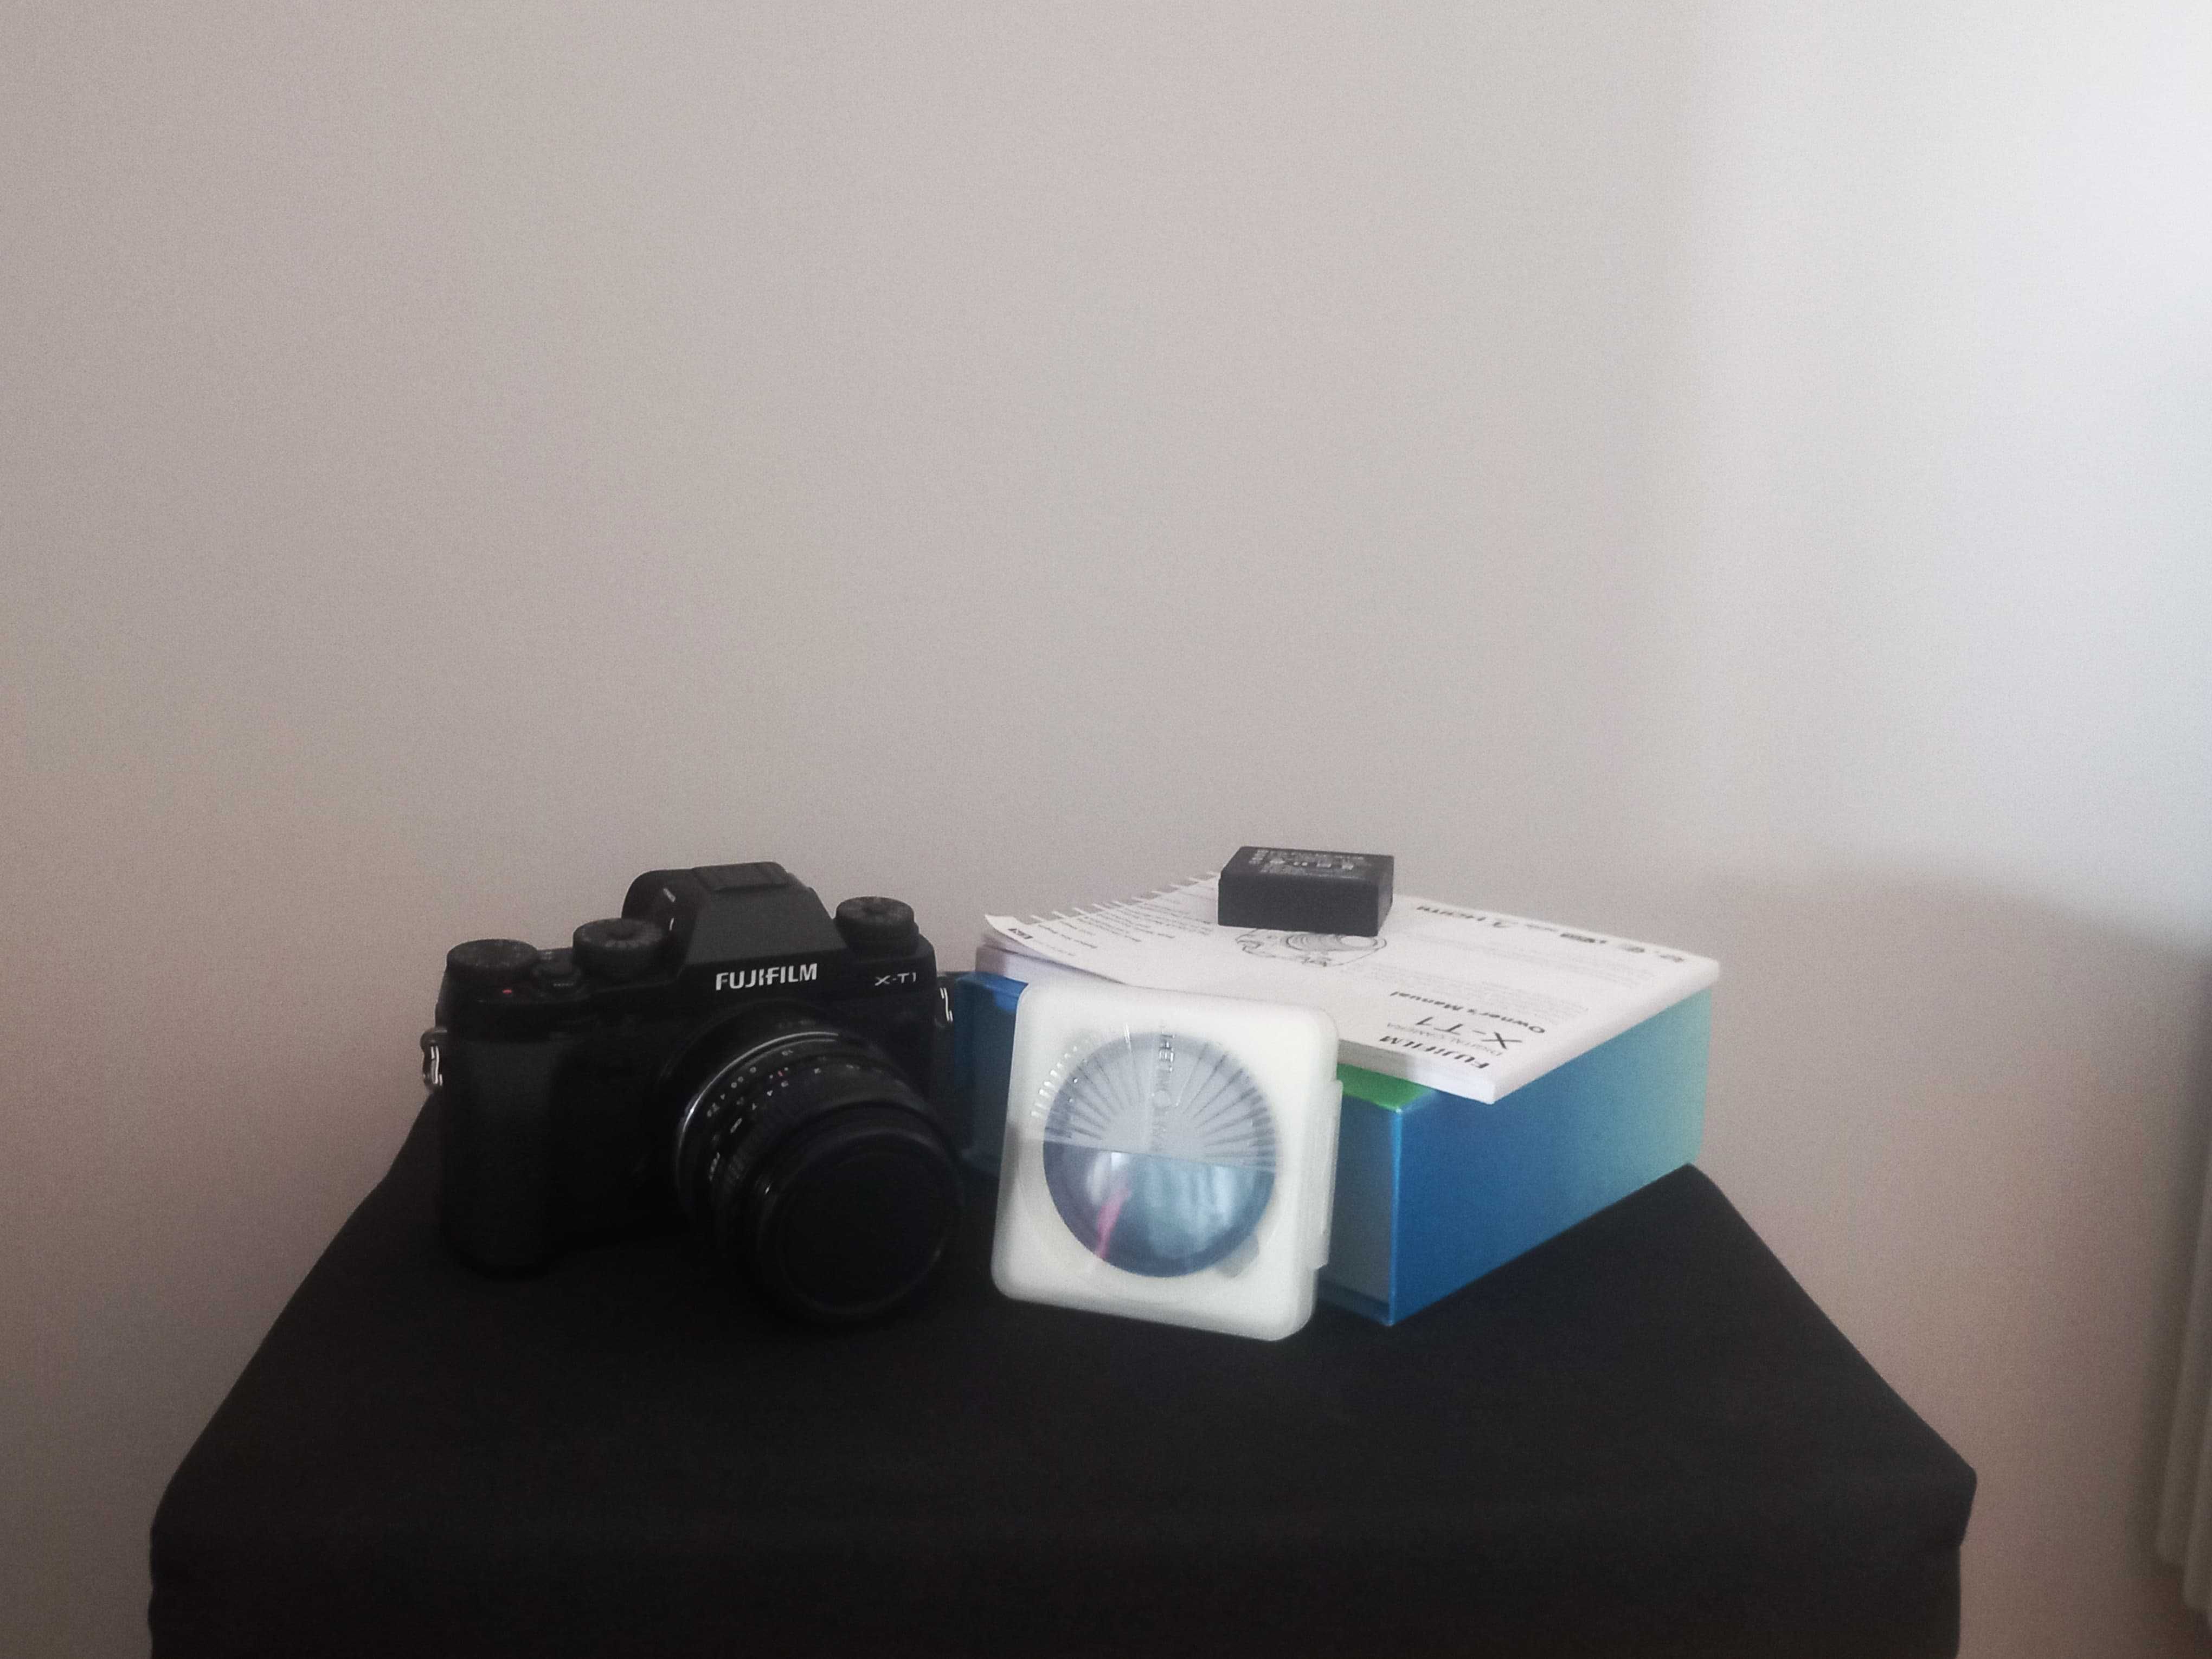 Camara Fotográfica Fuji X-T1 com capa, lente vivitar28mm e mais